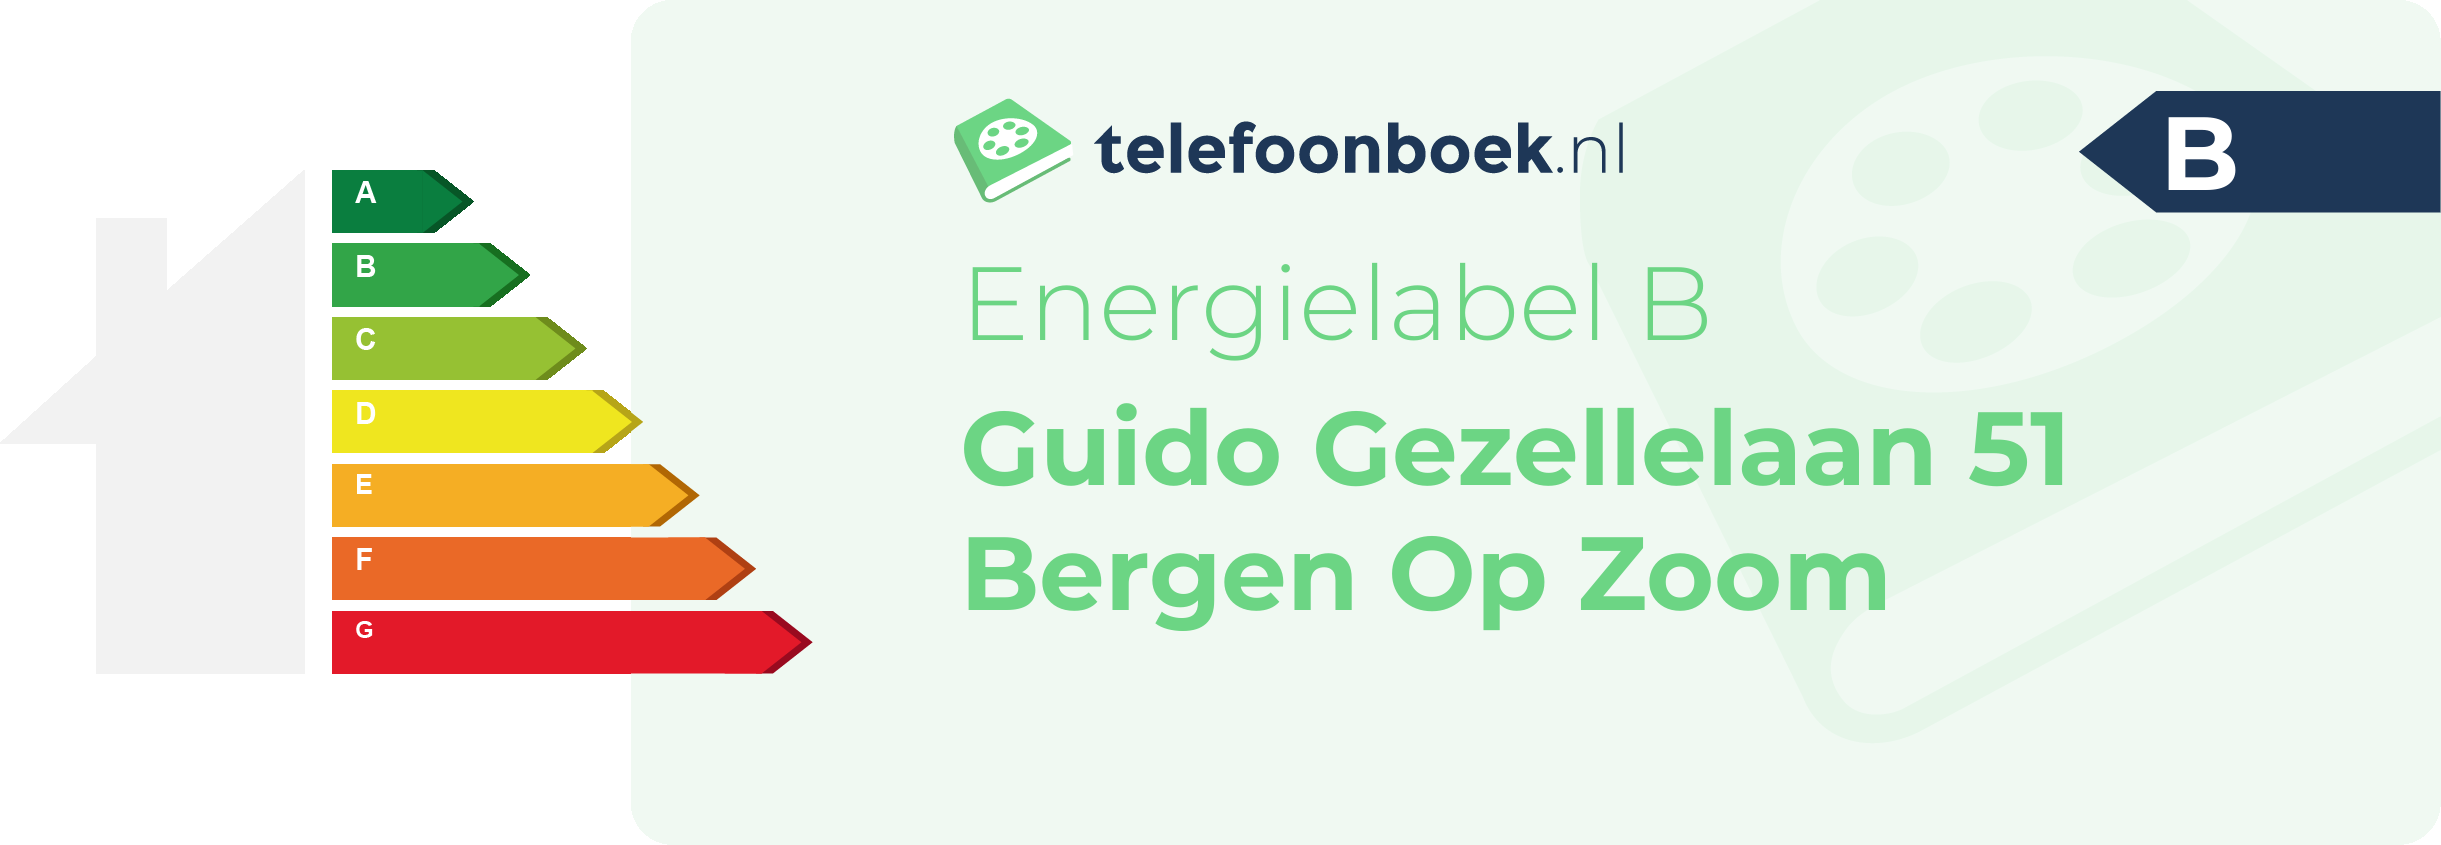 Energielabel Guido Gezellelaan 51 Bergen Op Zoom